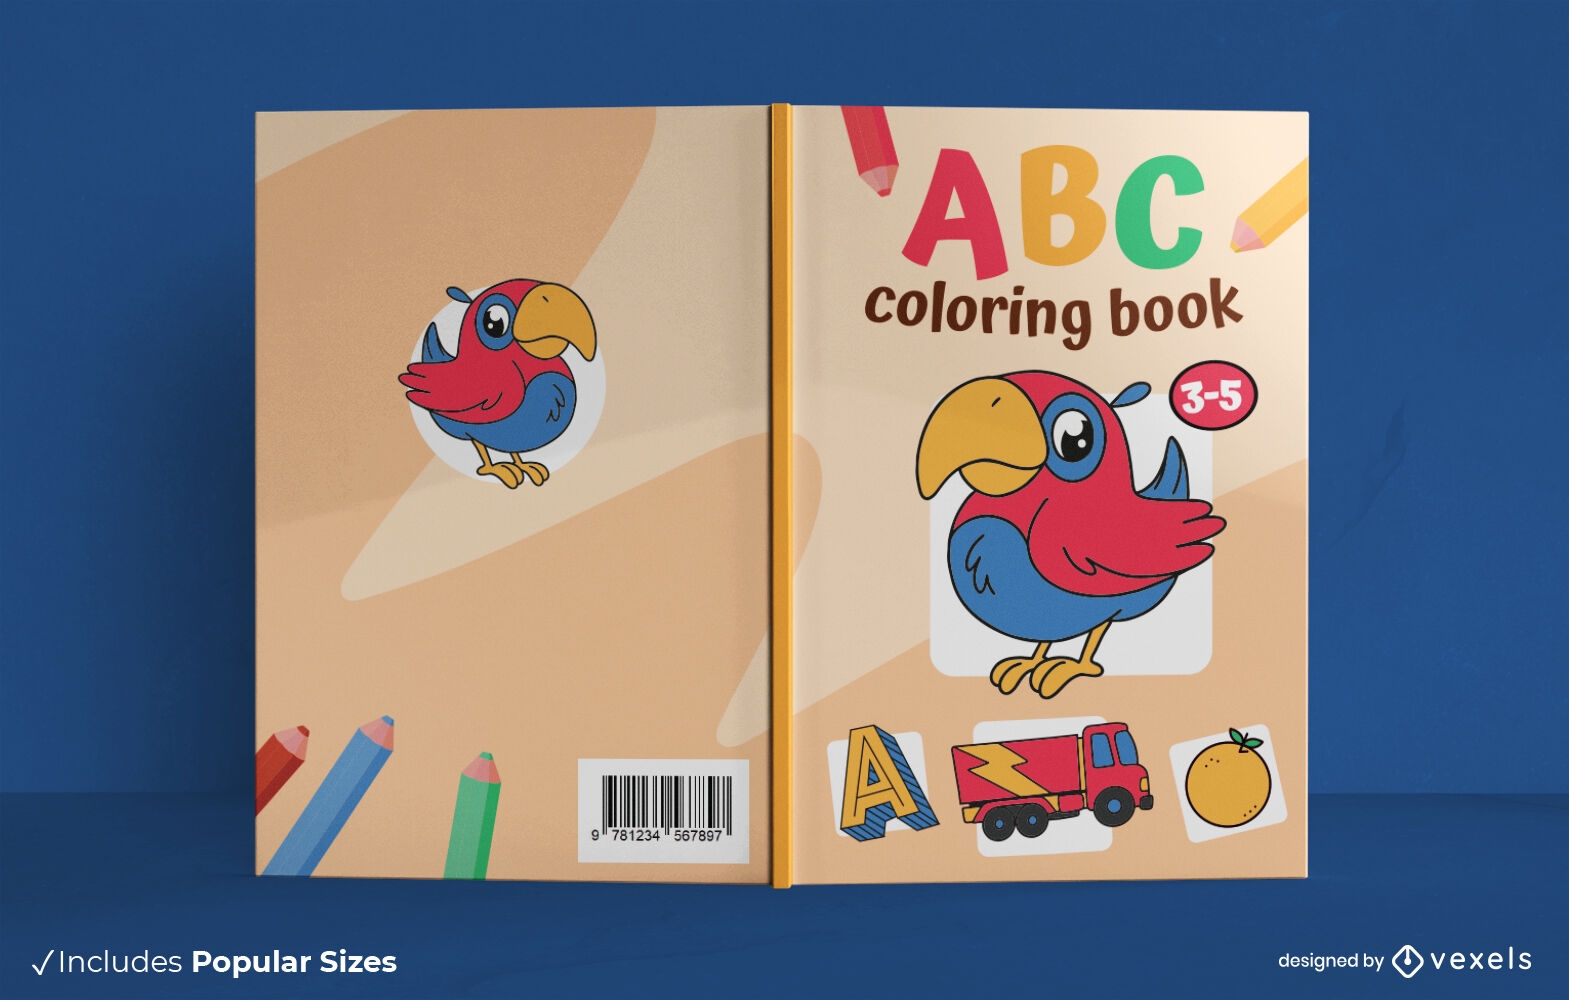 Dise?o de portada de libro para colorear ABC.